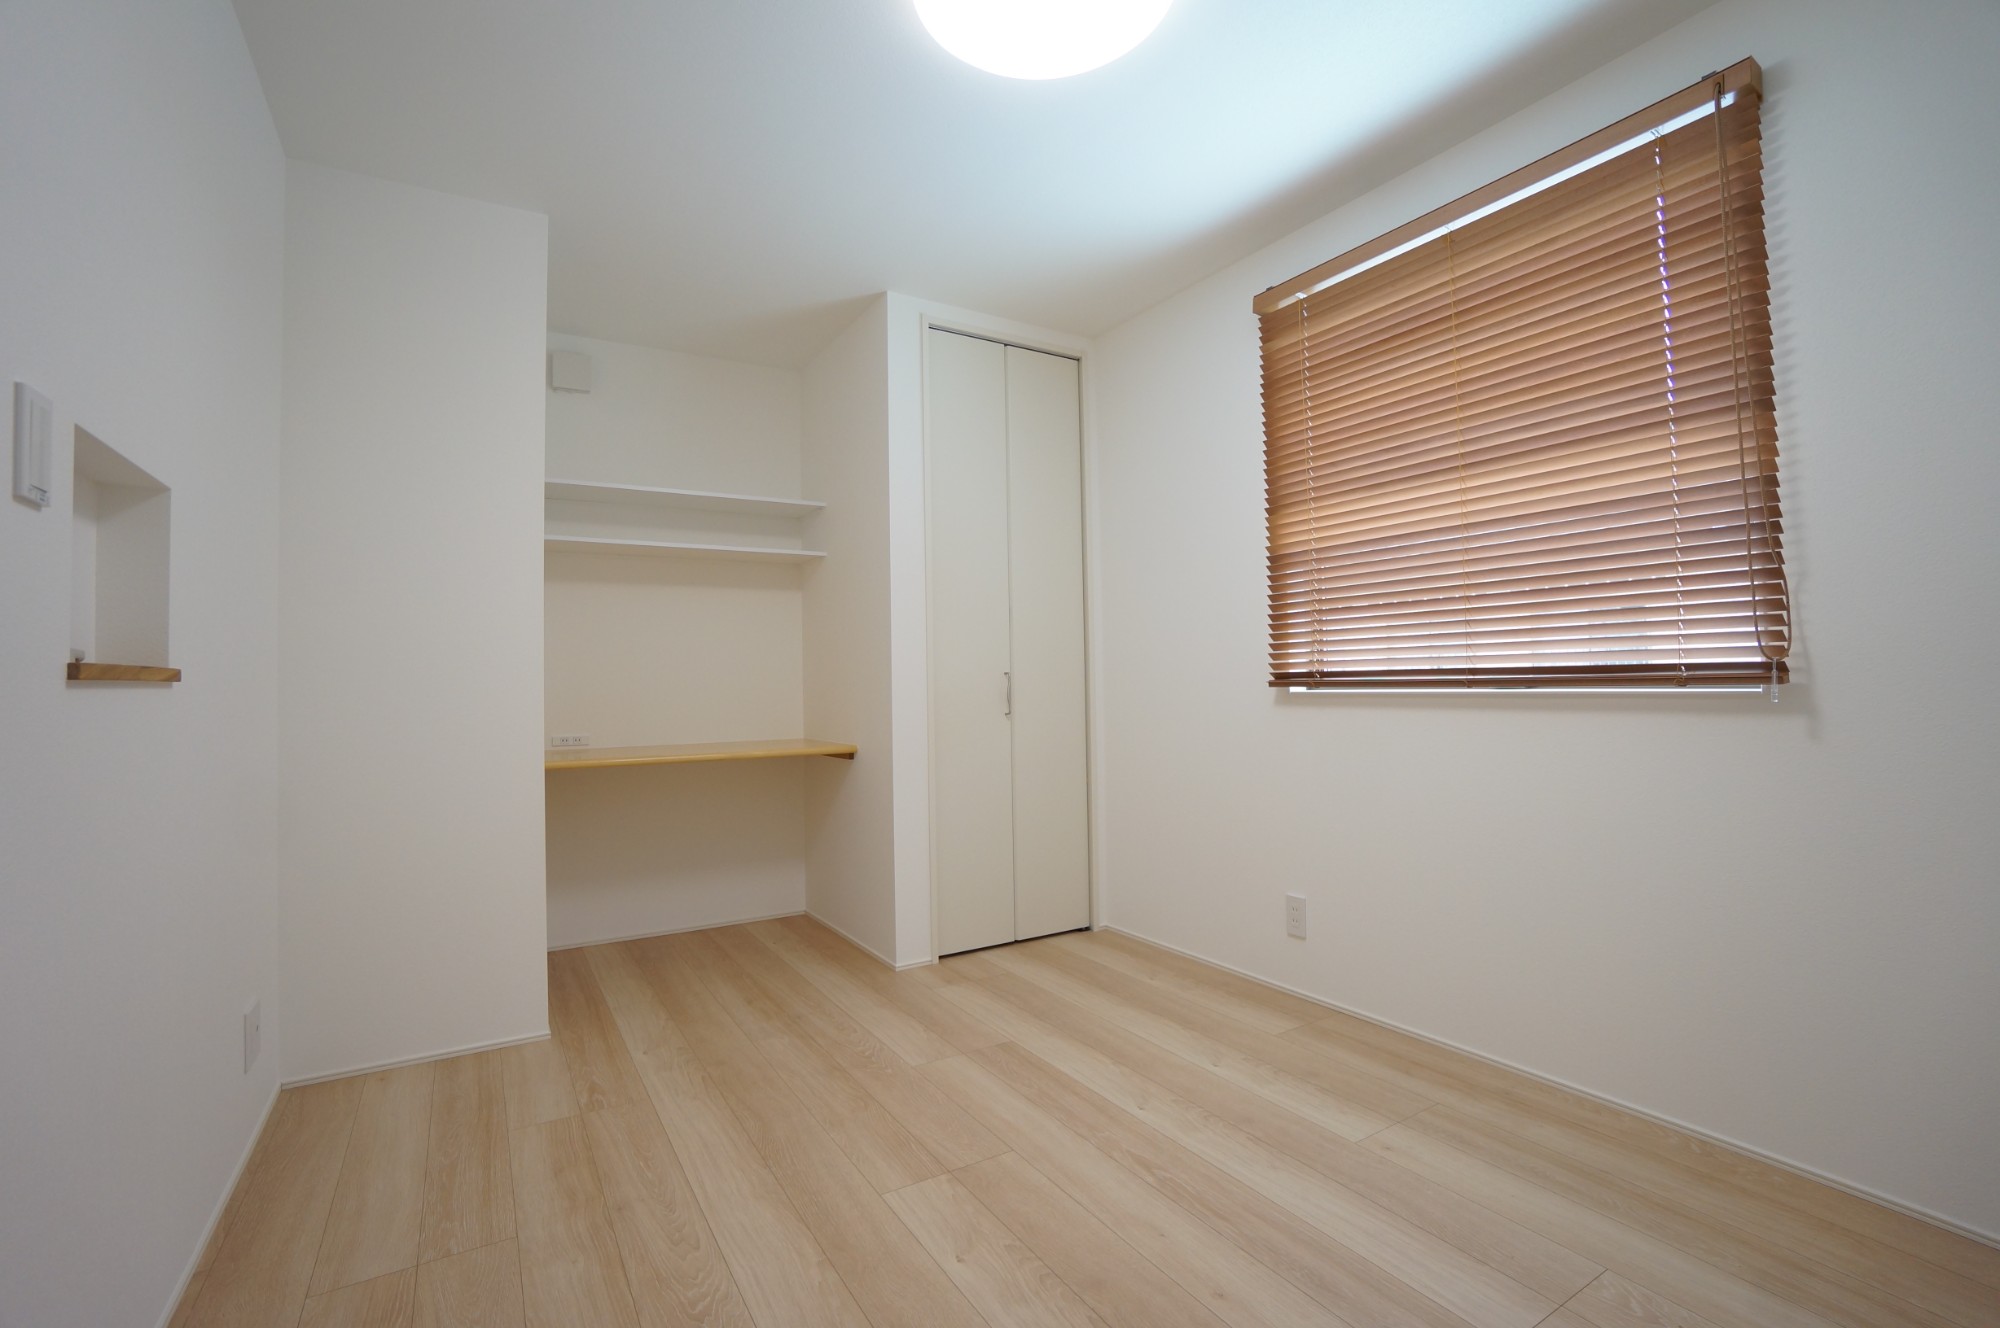 株式会社ノイデザイン建築事務所「work33」のシンプル・ナチュラルな居室の実例写真